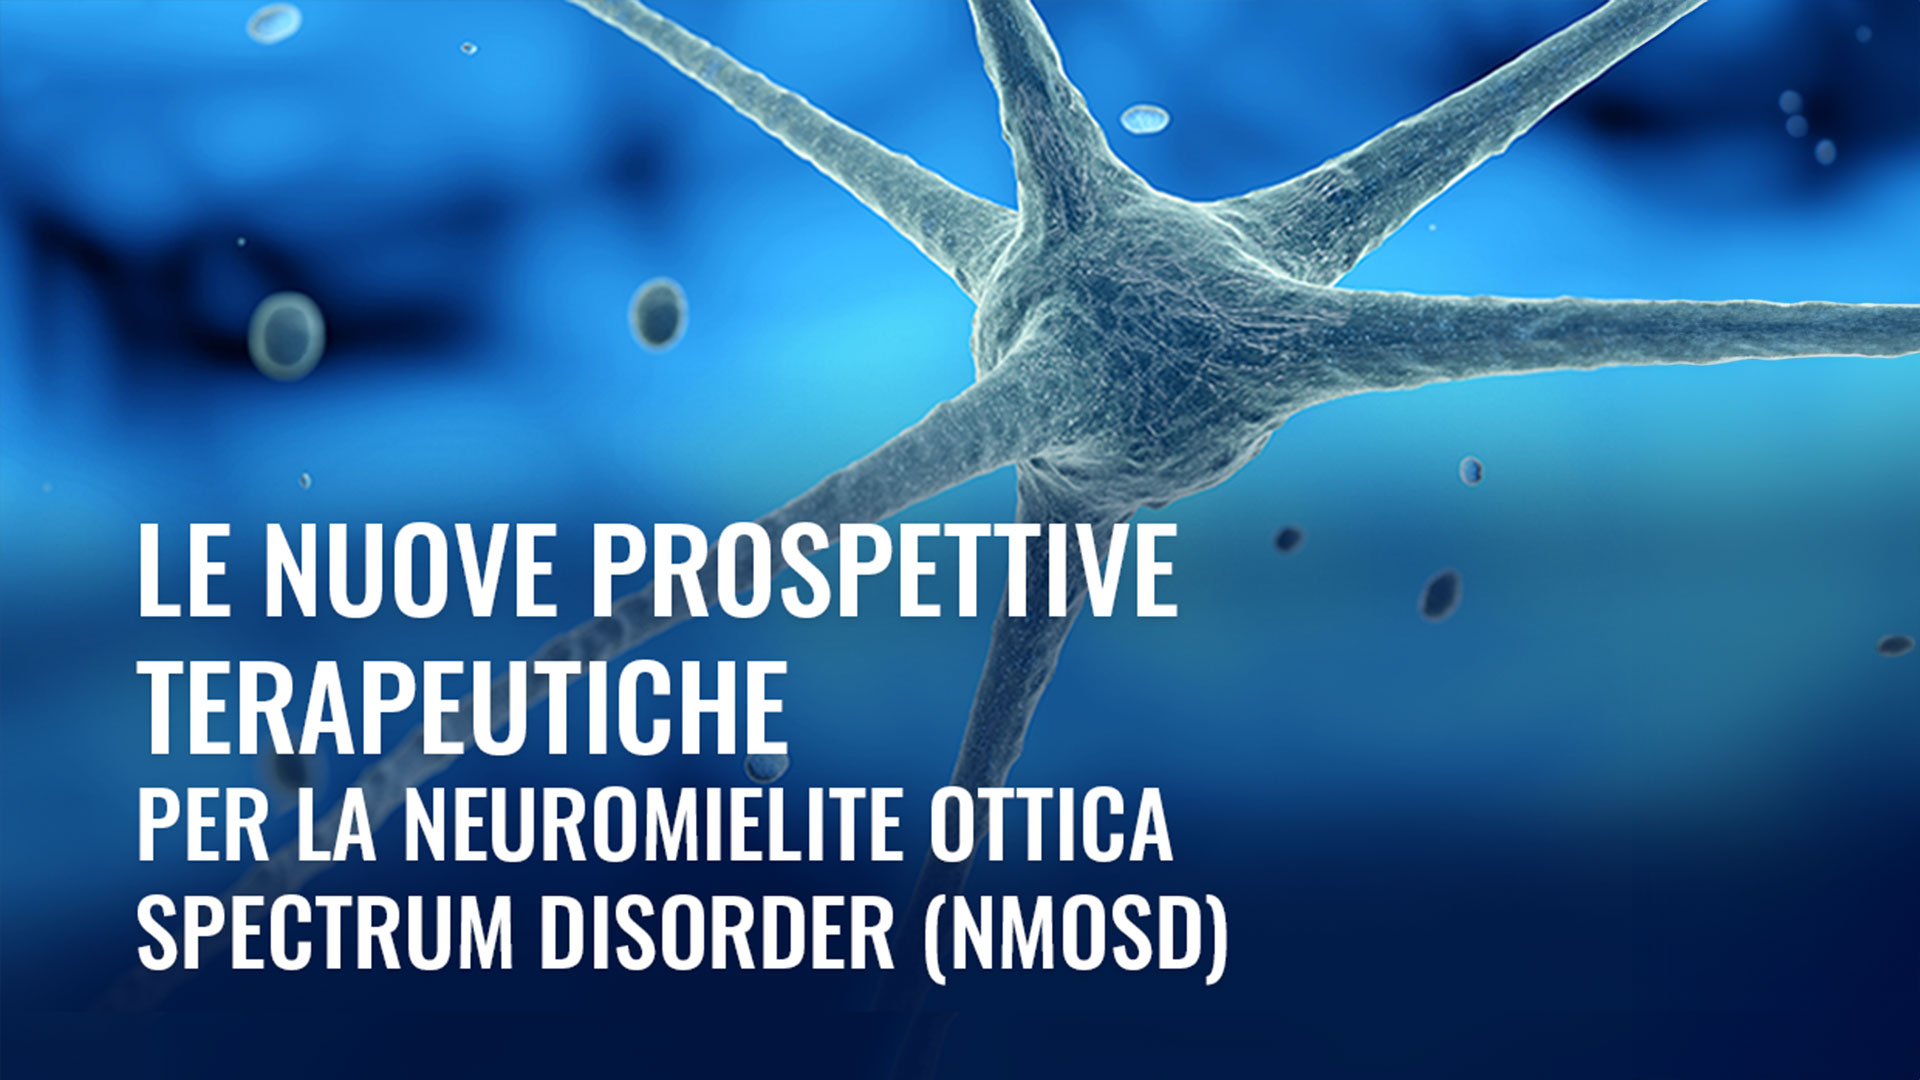 Le nuove prospettive terapeutiche per la Neuromielite Ottica Spectrum Disorder (NMOSD)